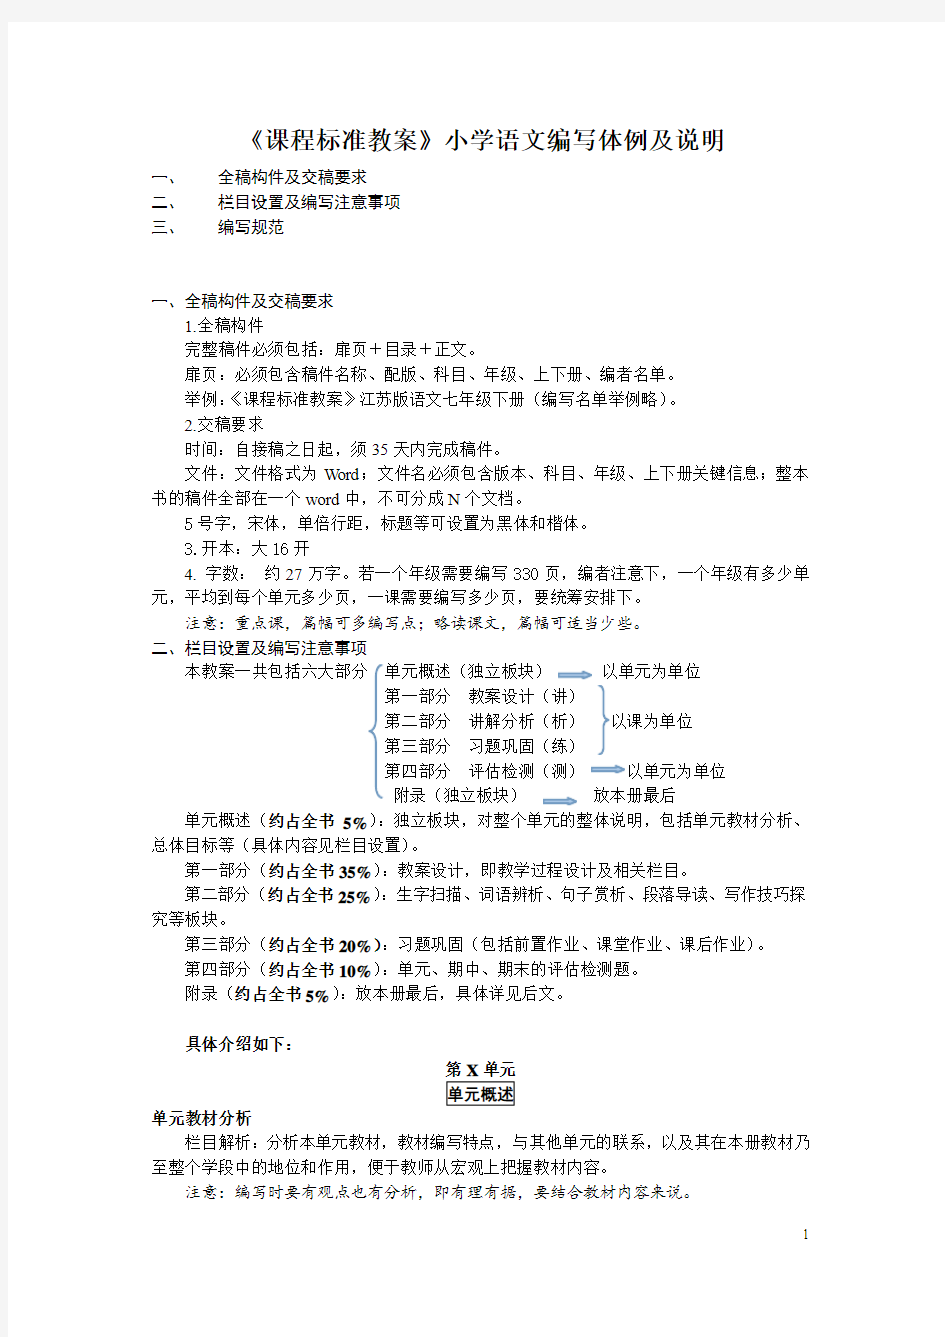 小学语文教案编写体例2015.3.18